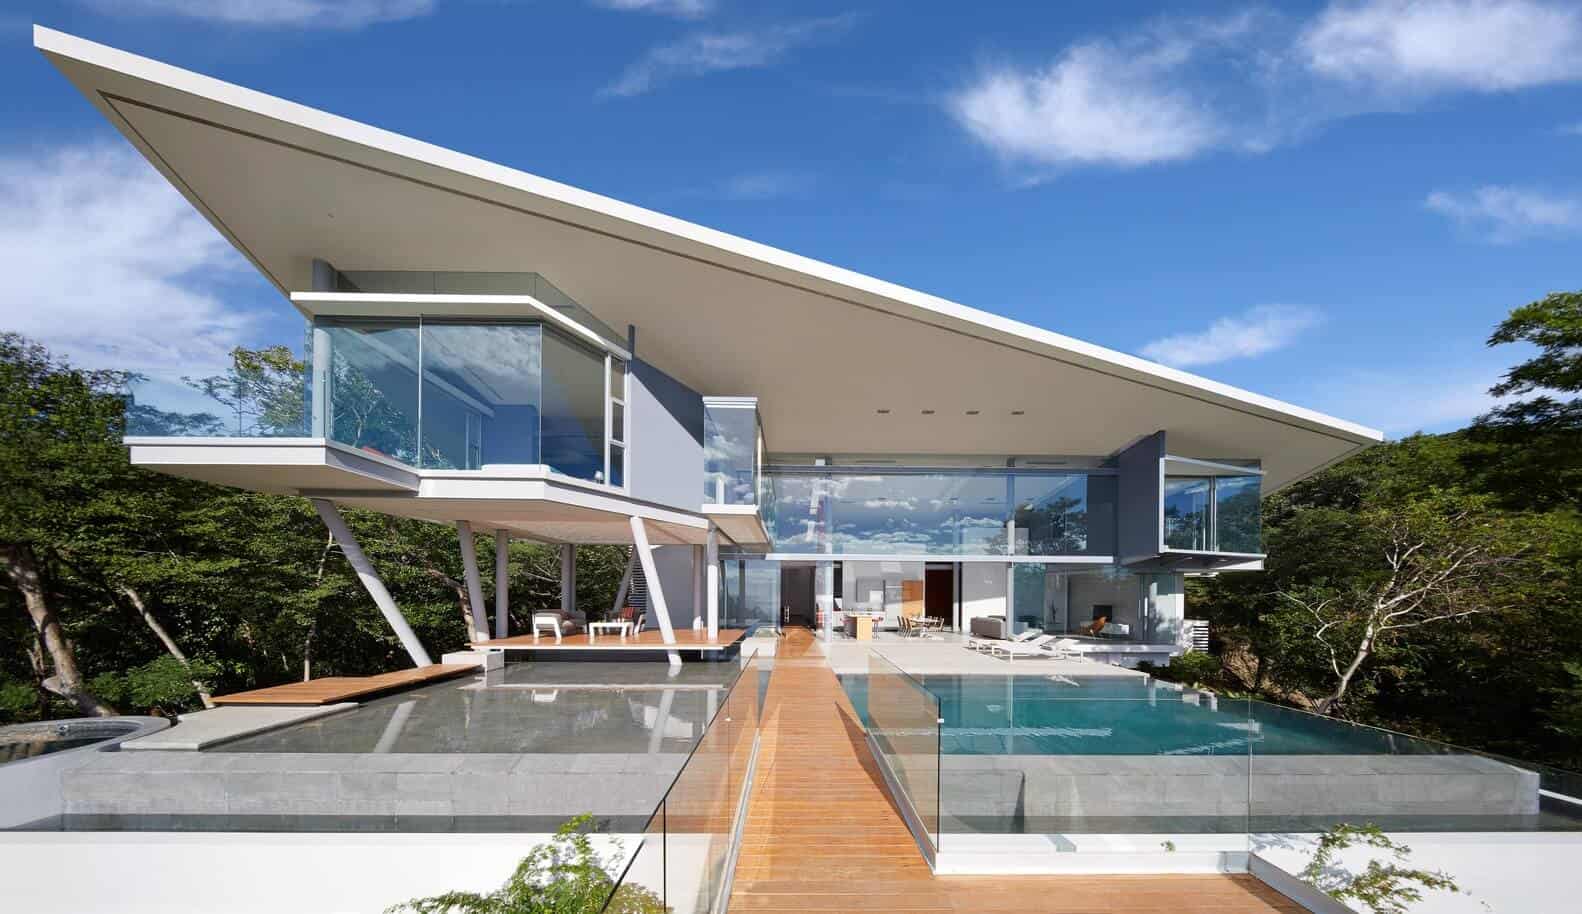 House design: 15 newfangled & futuristic ideas